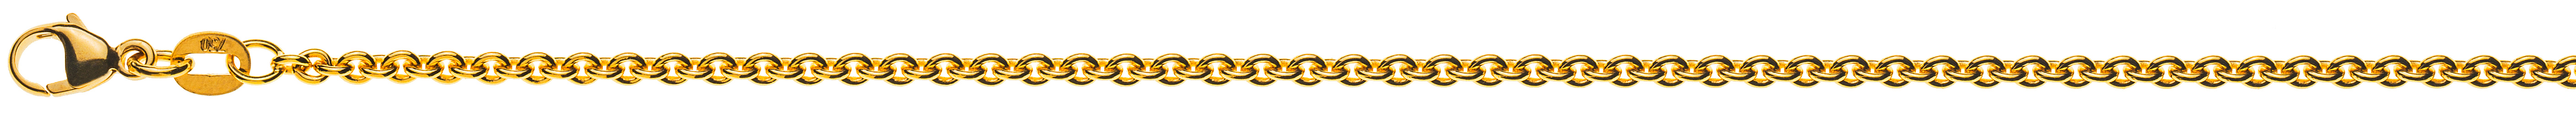 AURONOS Prestige Halskette Gelbgold 18K Rundanker 60cm 2.3mm